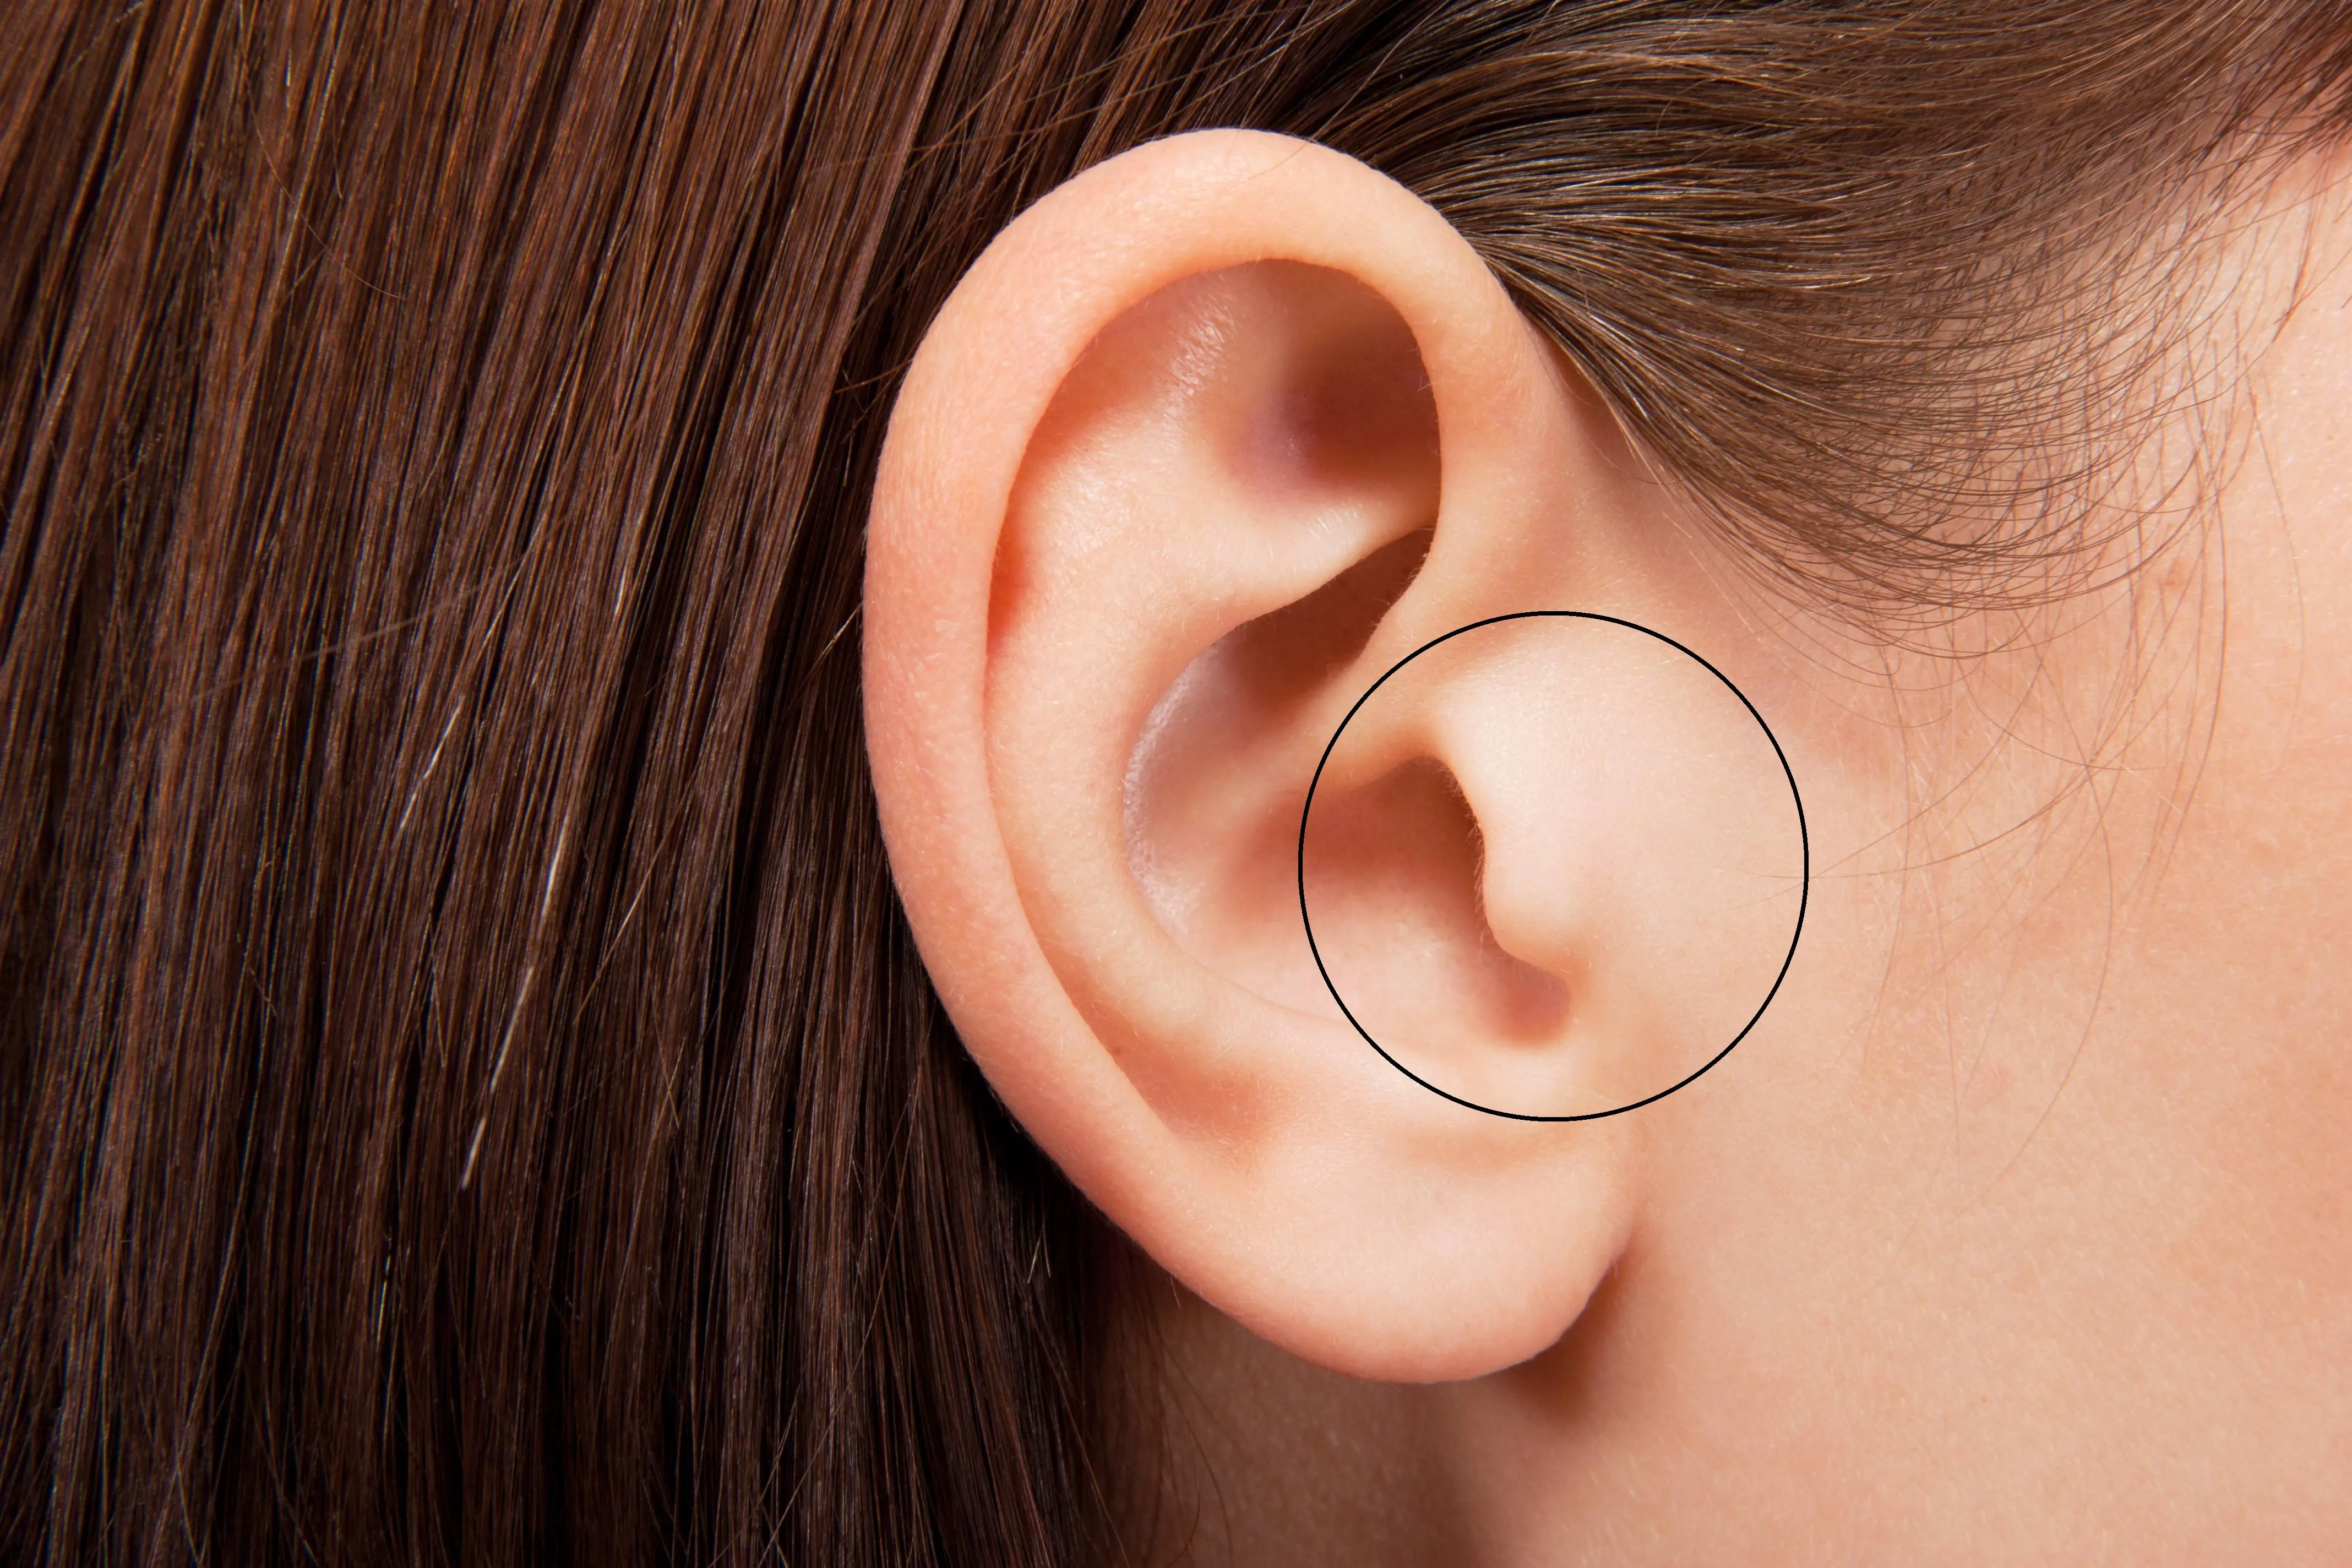 Щоб позбутися закладеності вух необхідно натиснути на козелок поспіль кілька разів